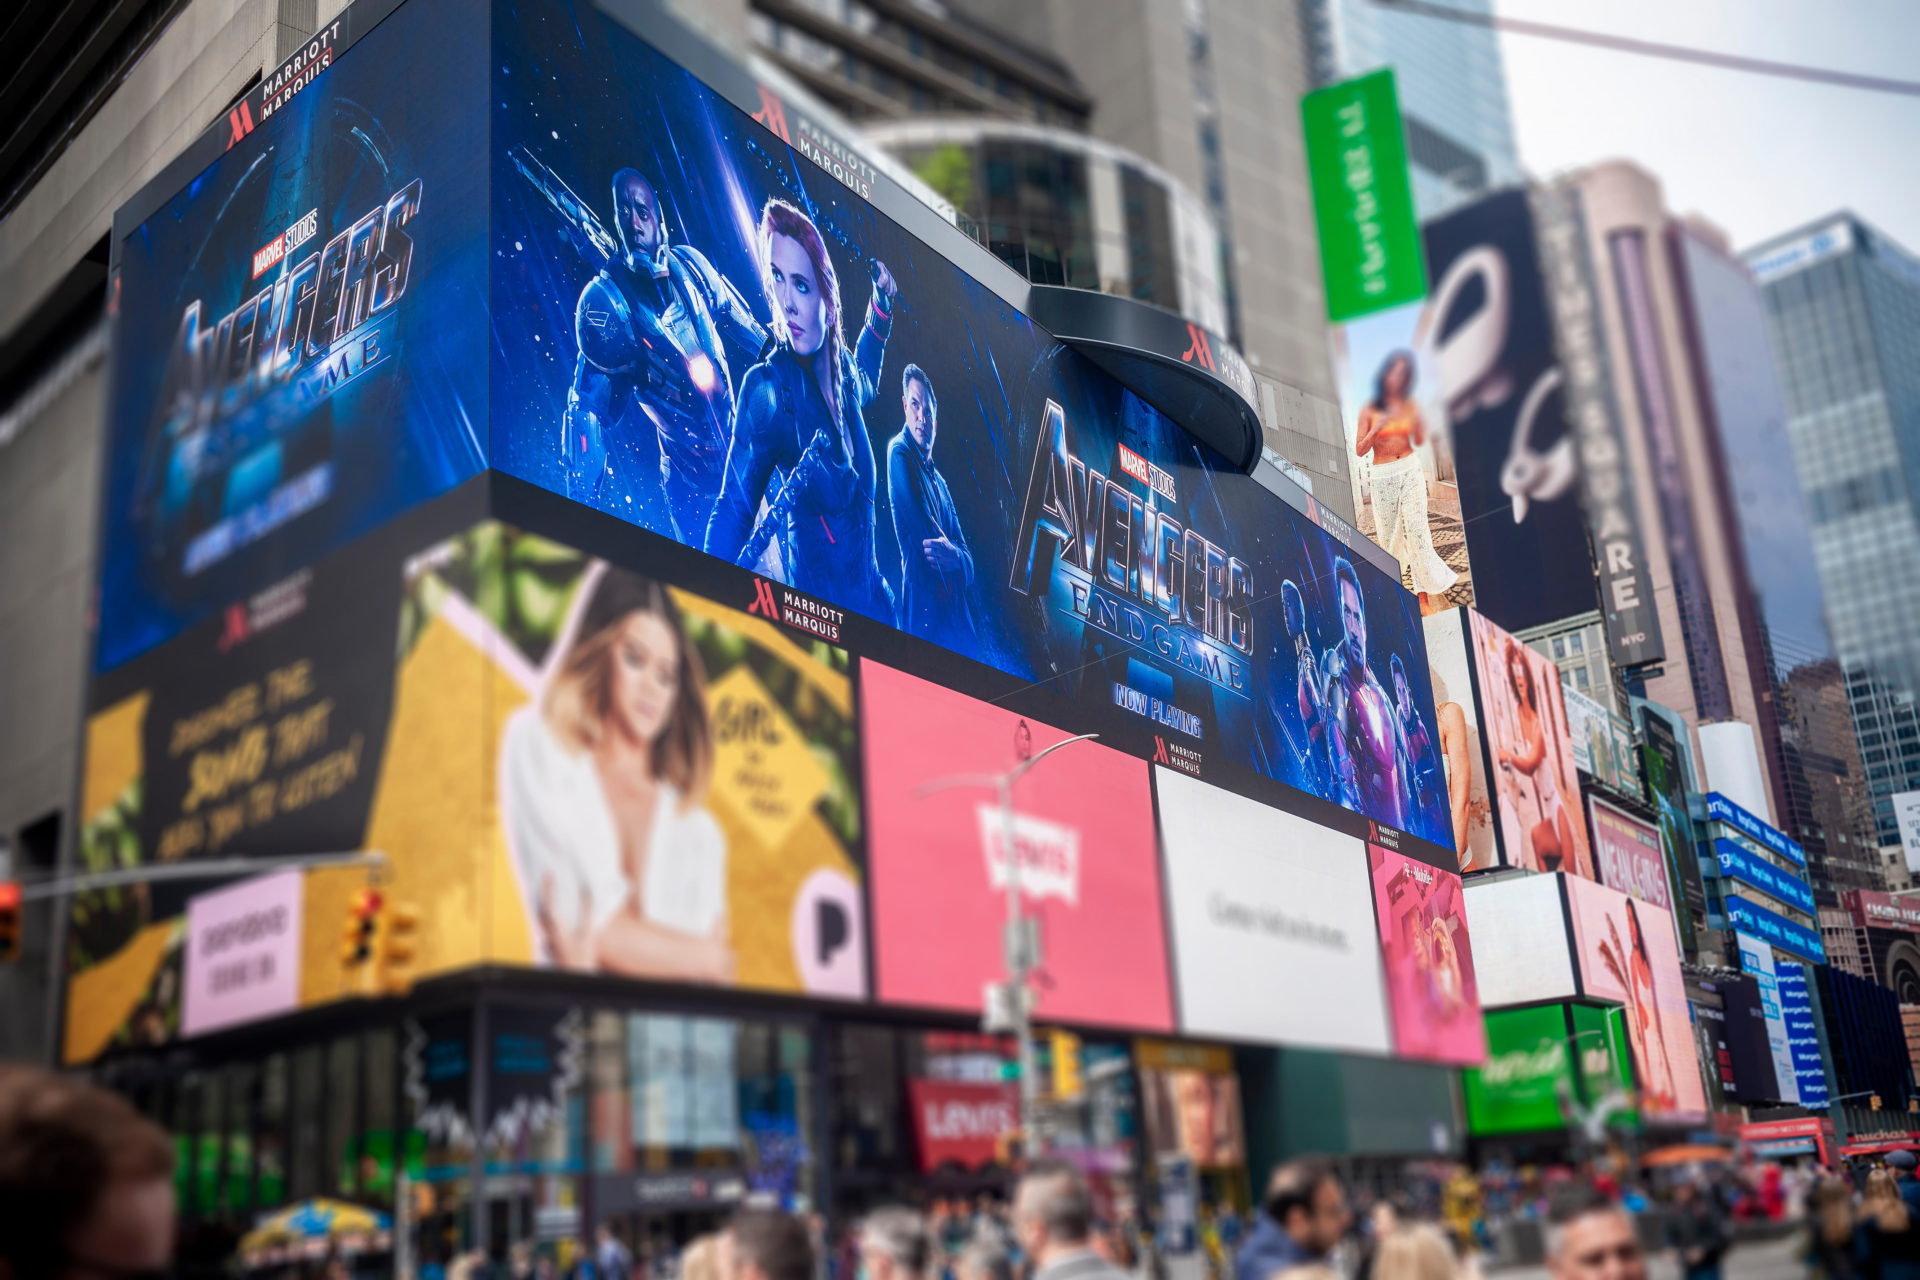 Advertising for Marvel Studios 'Avengers: Endgame' in Times Square, New York in April 2019